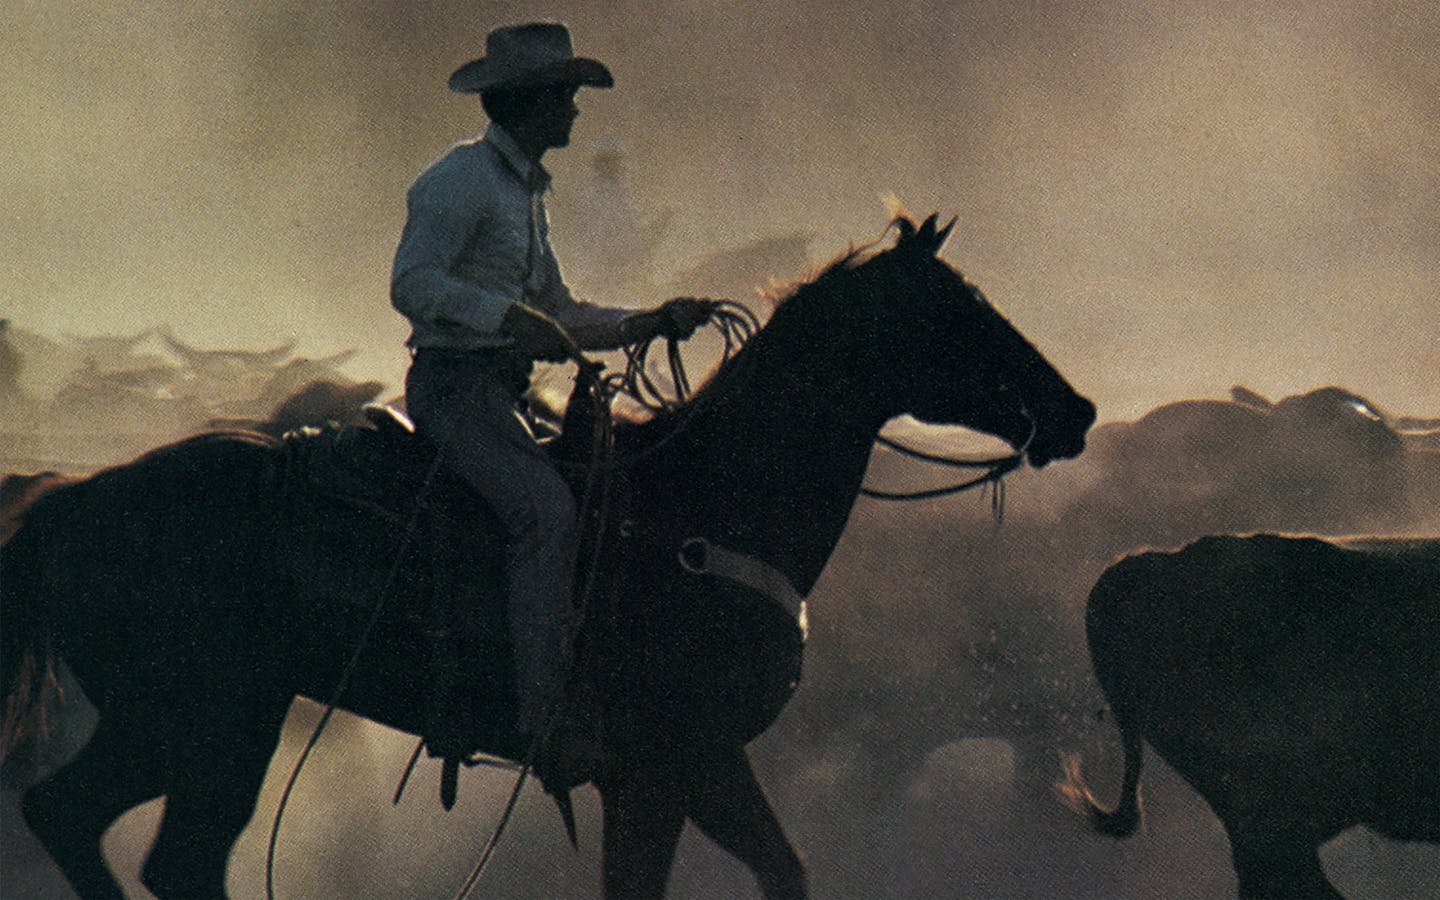 Death Rides a Horse, Cowboy, English, HD, Western Movie